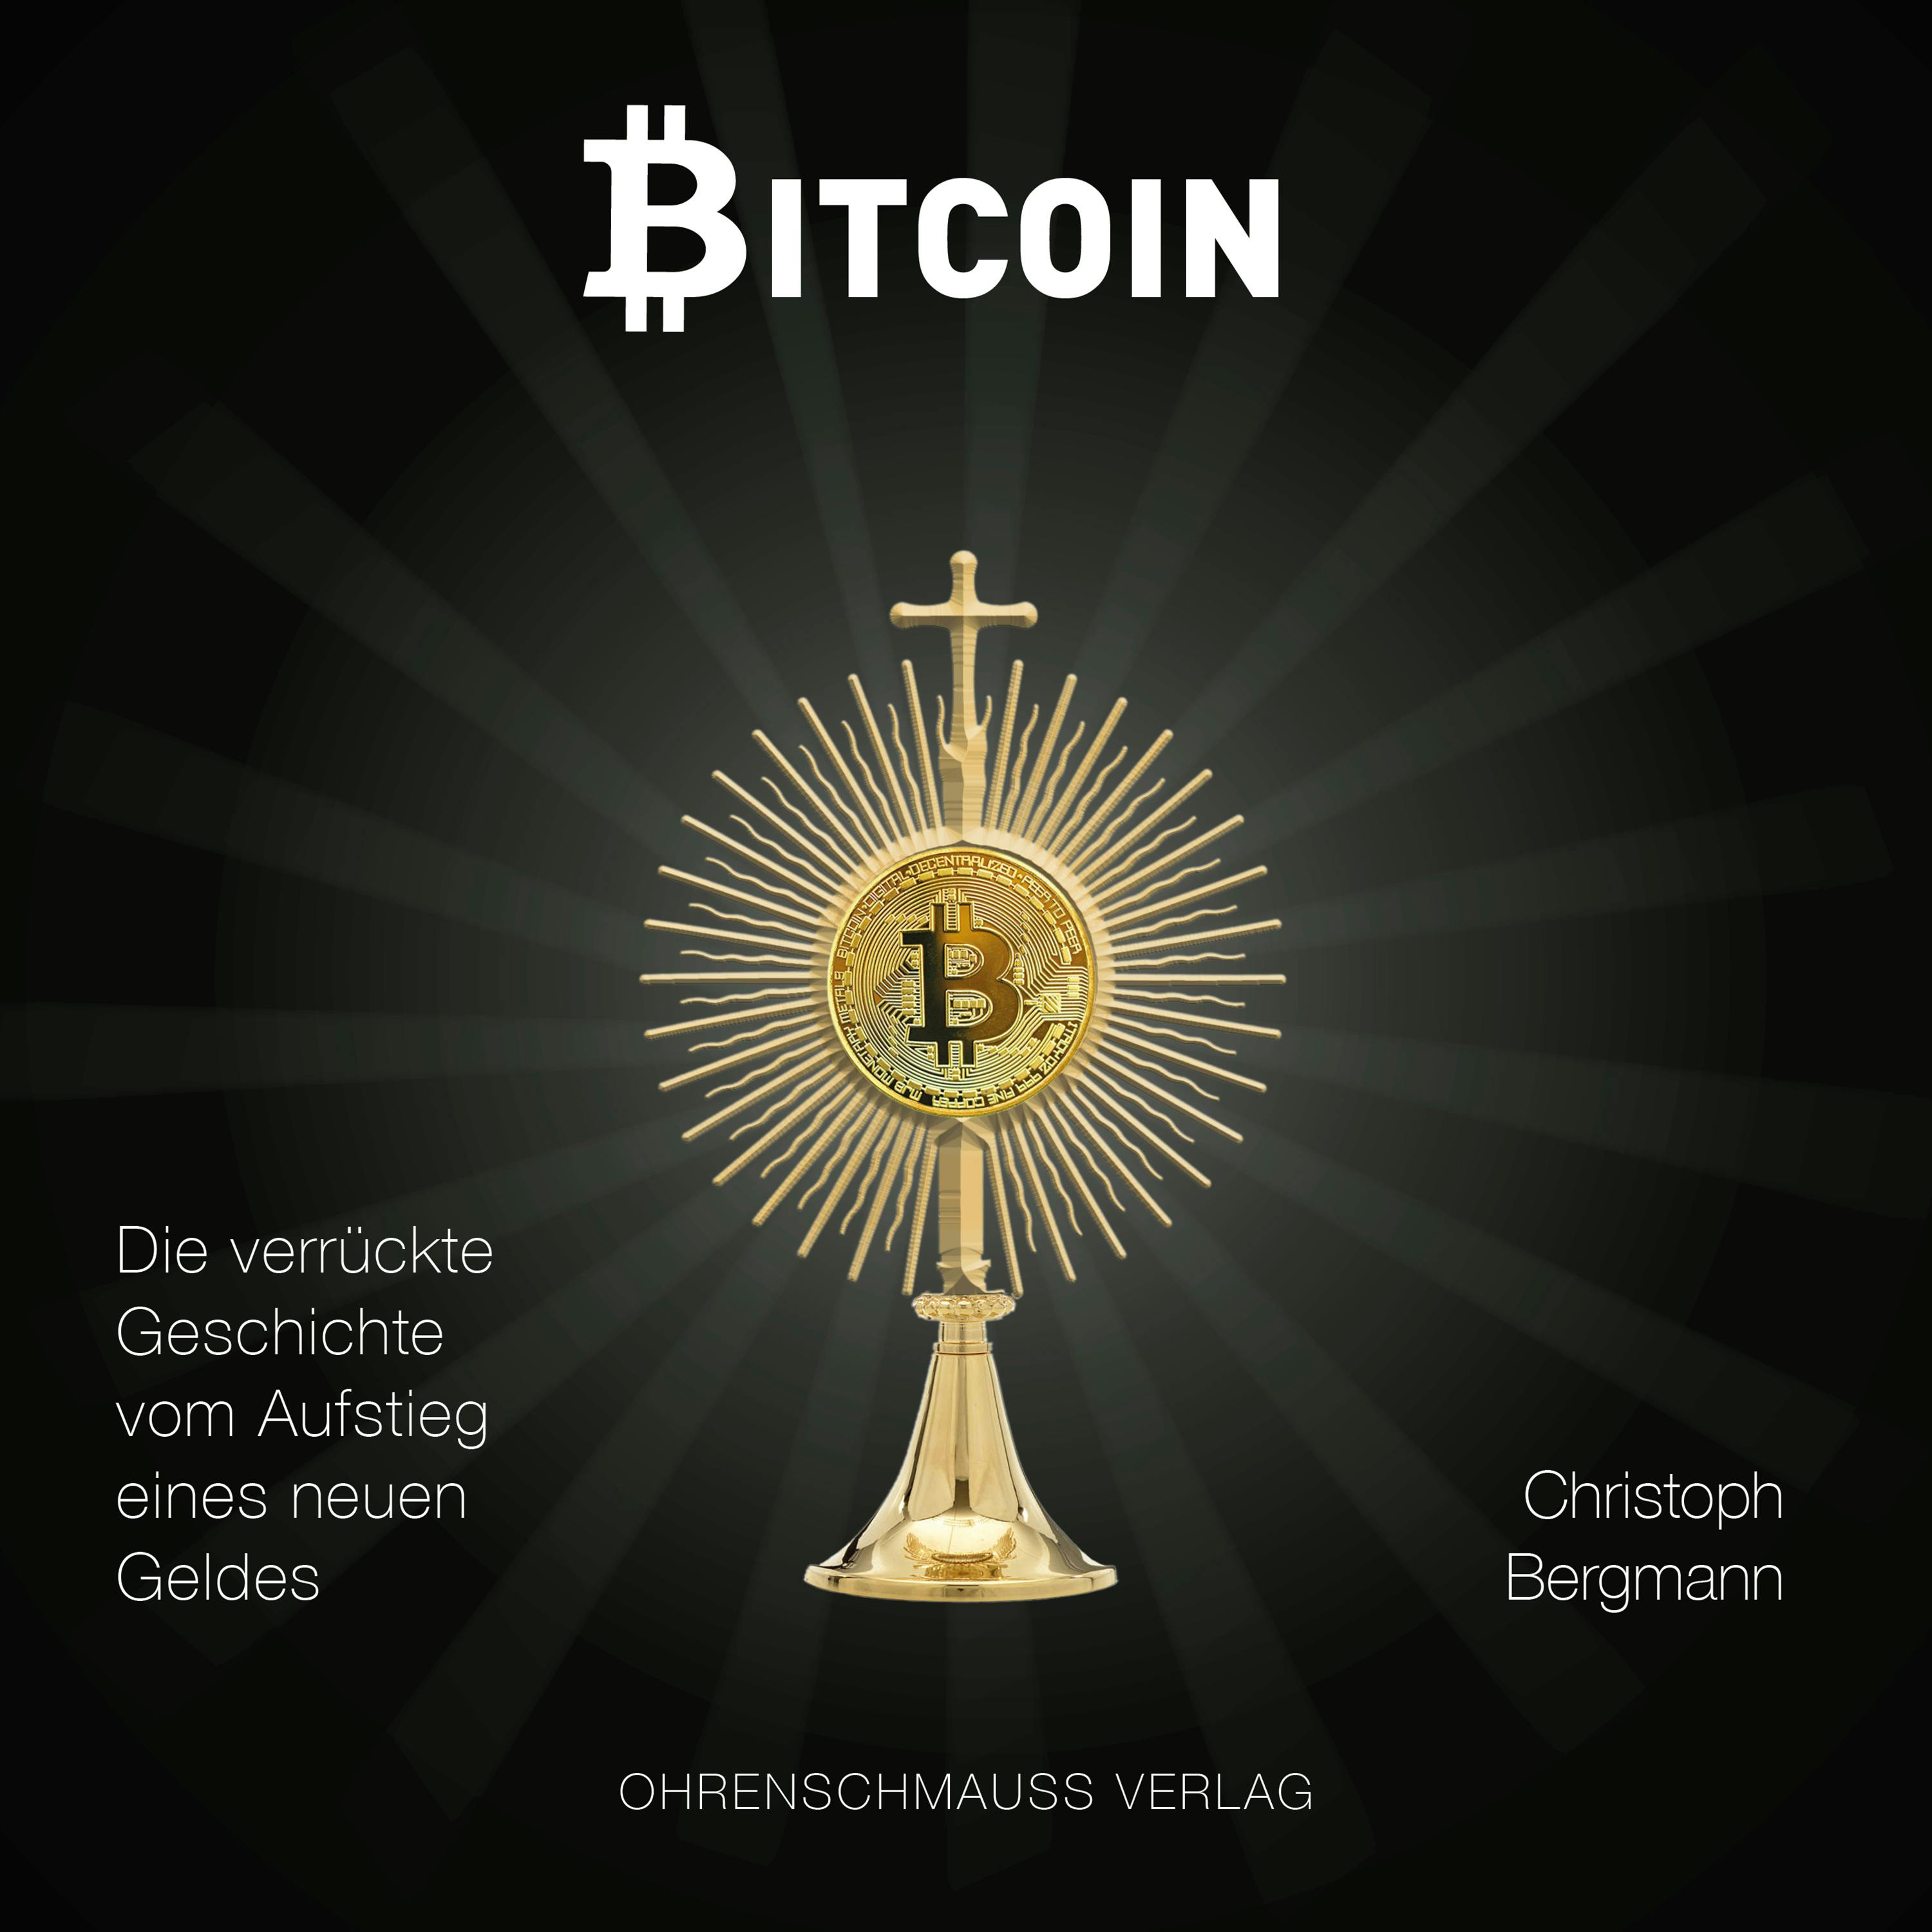 Bitcoin: Die verrückte Geschichte vom Aufstieg eines neuen Geldes - Christoph Bergmann